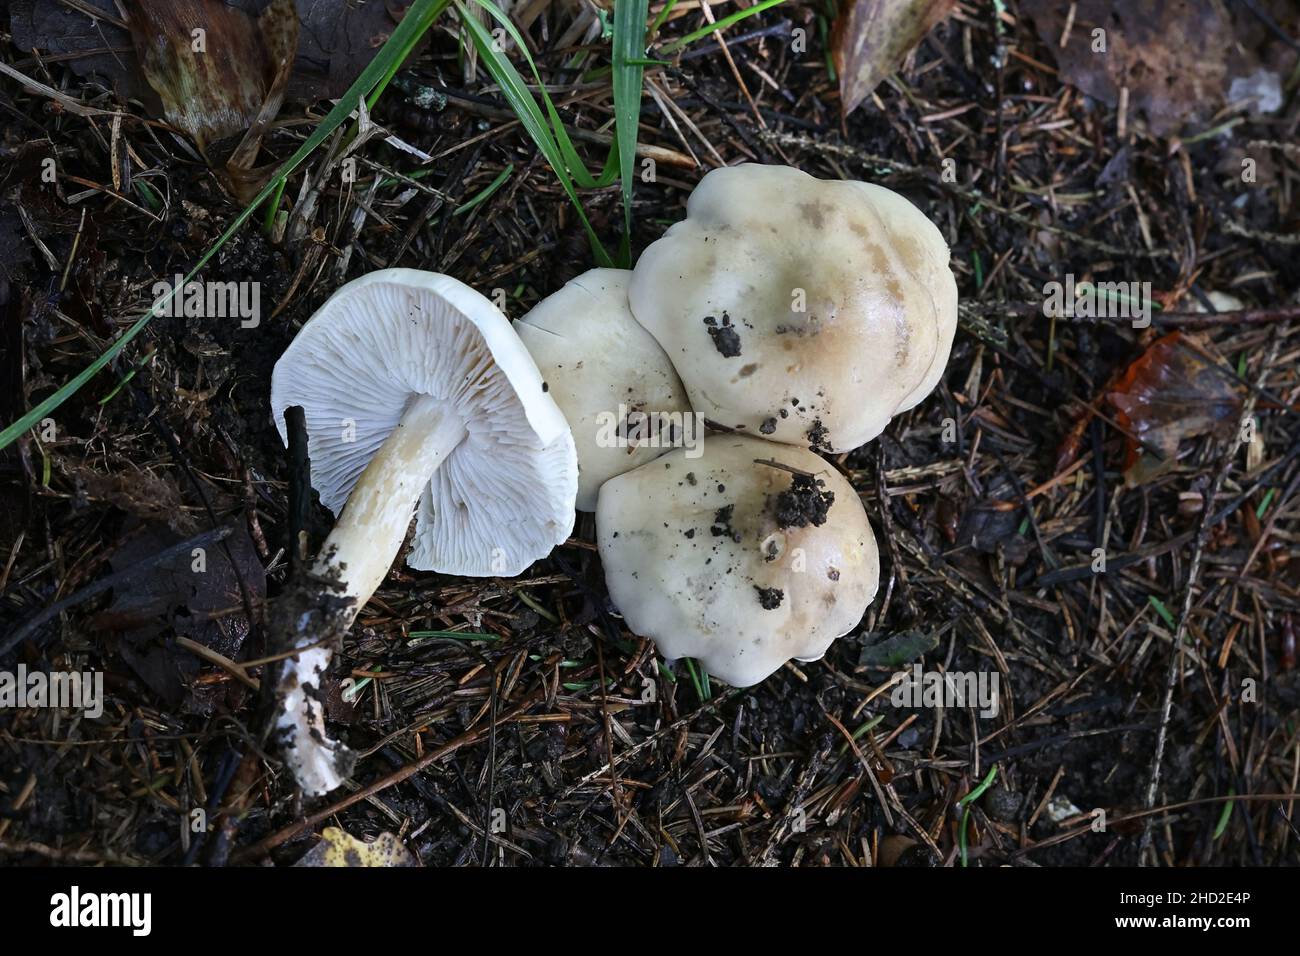 Hebeloma velutipes, allgemein bekannt als blass poisonpie oder Poison Pie, Wildpilz aus Finnland Stockfoto